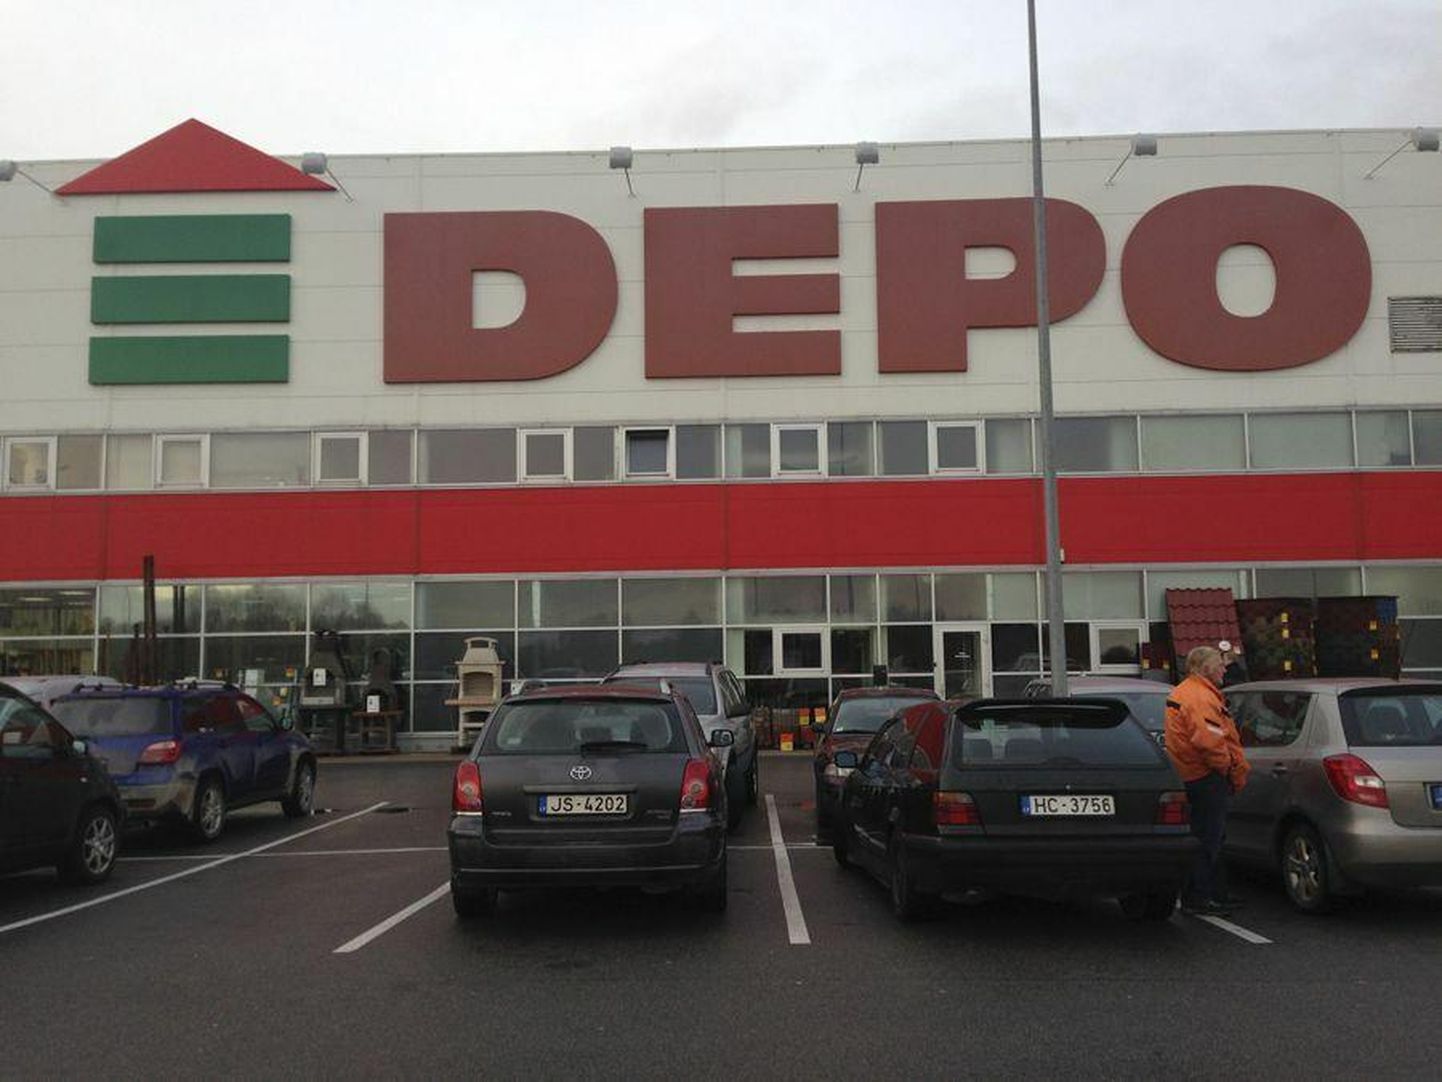 Läti kauplusekett Depo on eestlastele tuttav eelkõige ehitusmaterjalide suure valiku poolest. Ka valgamaalsed käivad seal ehitusmaterjali ostmas.